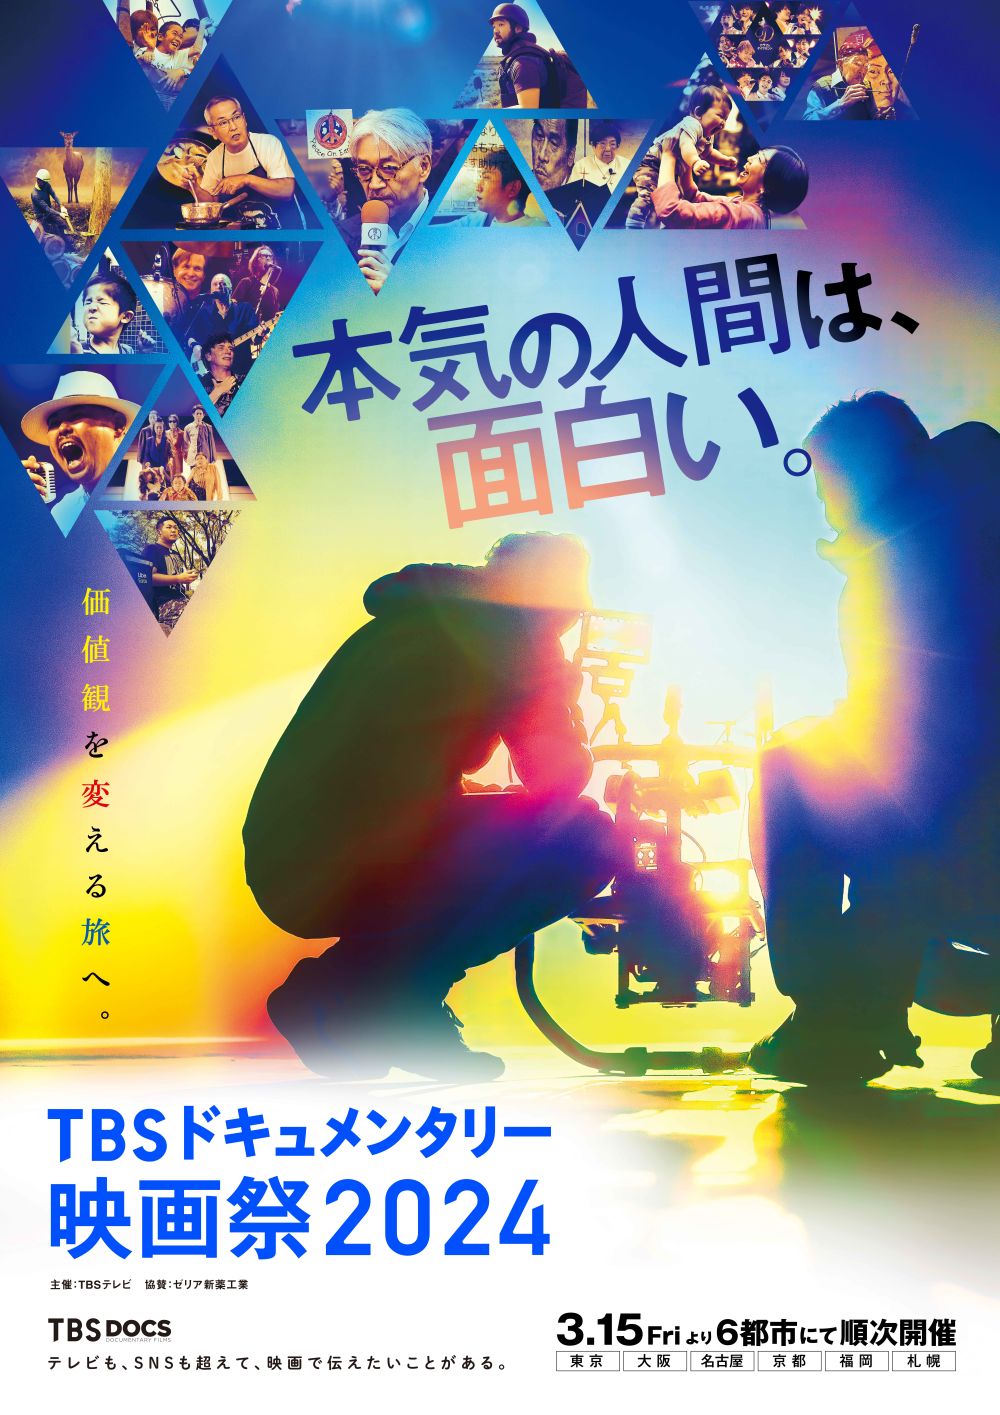 TBS poster sRGB 018 fix_ポスター